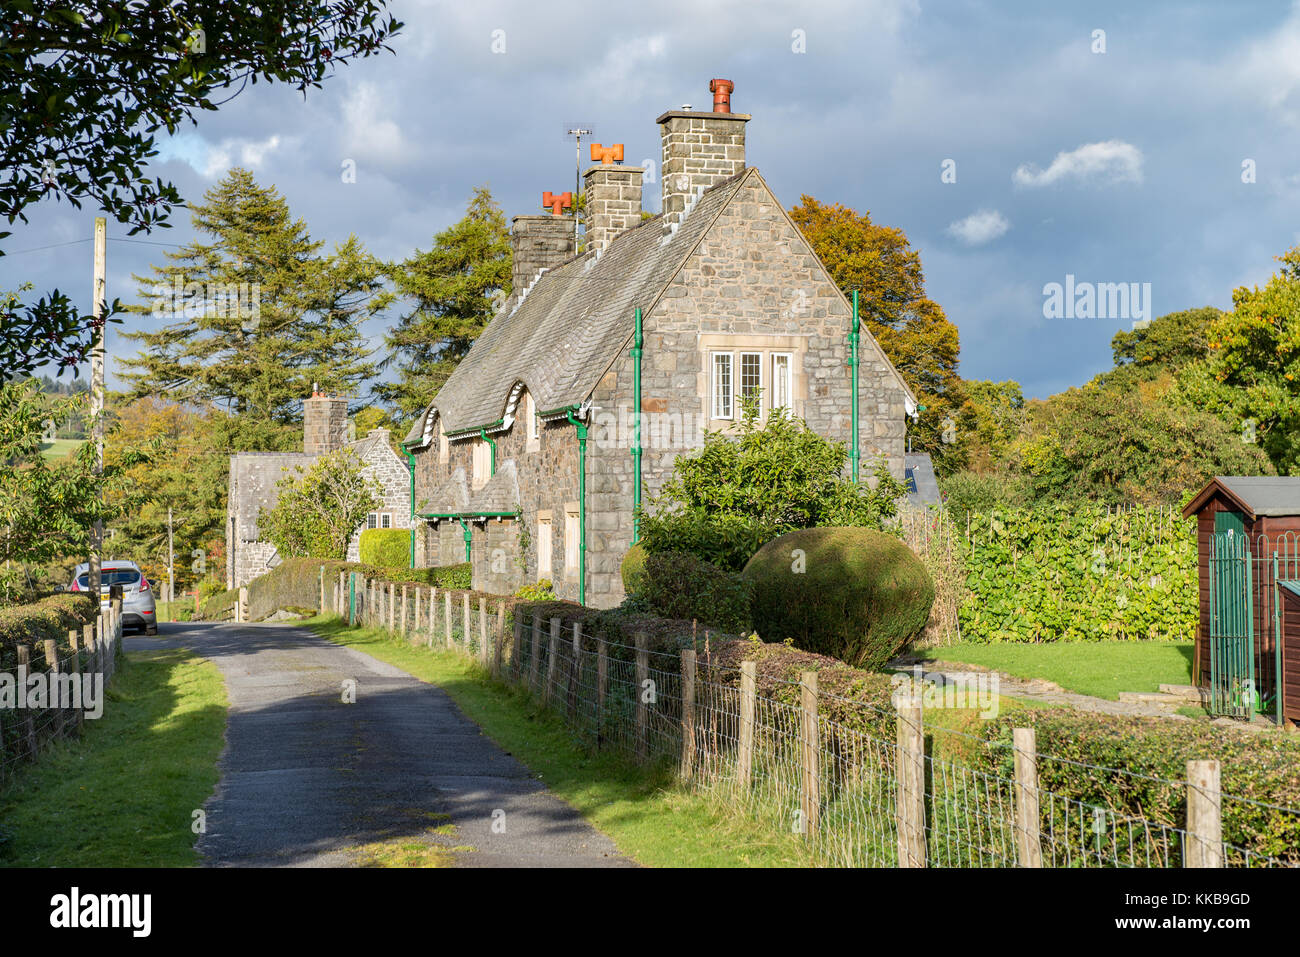 Cottages in Elan village, Elan Valley, Powys, Wales. UK. Stock Photo